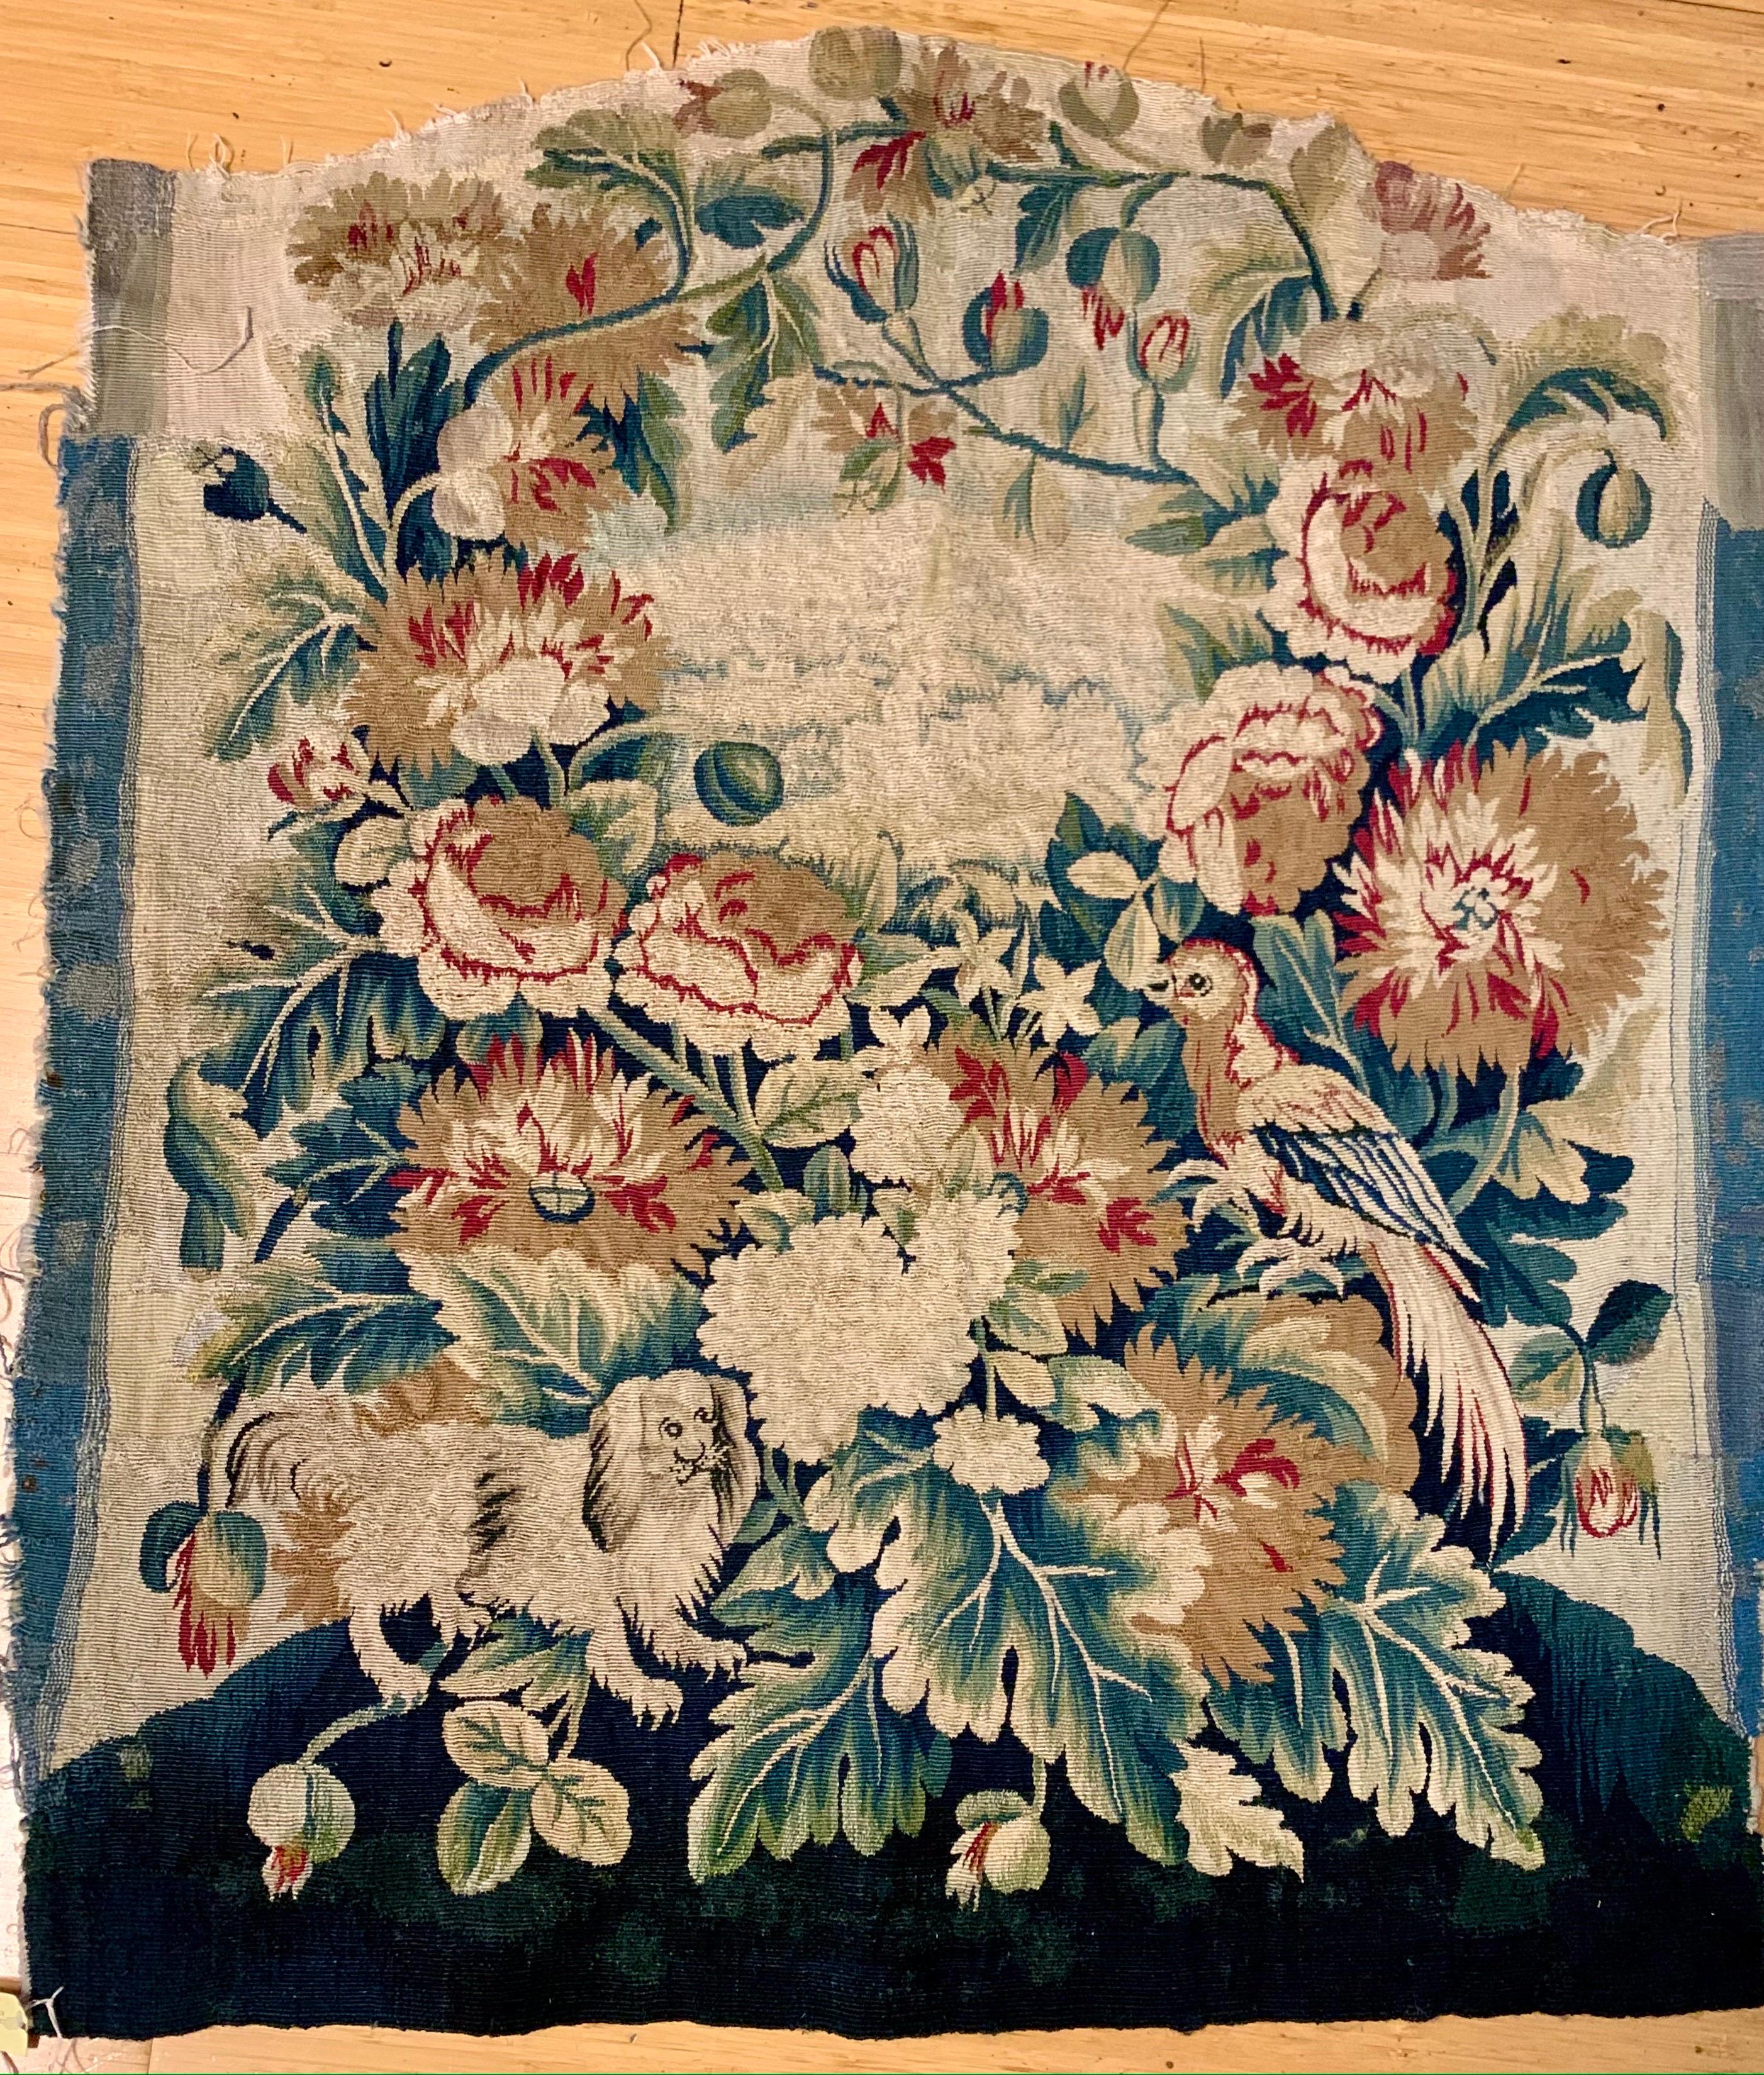 Il s'agit d'un fragment de dossier de chaise en soie et laine provenant d'une ancienne chaise d'Aubusson française du 18ème siècle.  Dossier de chaise tissé en laine et en soie, chacun avec une broderie de couronnes florales de pivoines, de